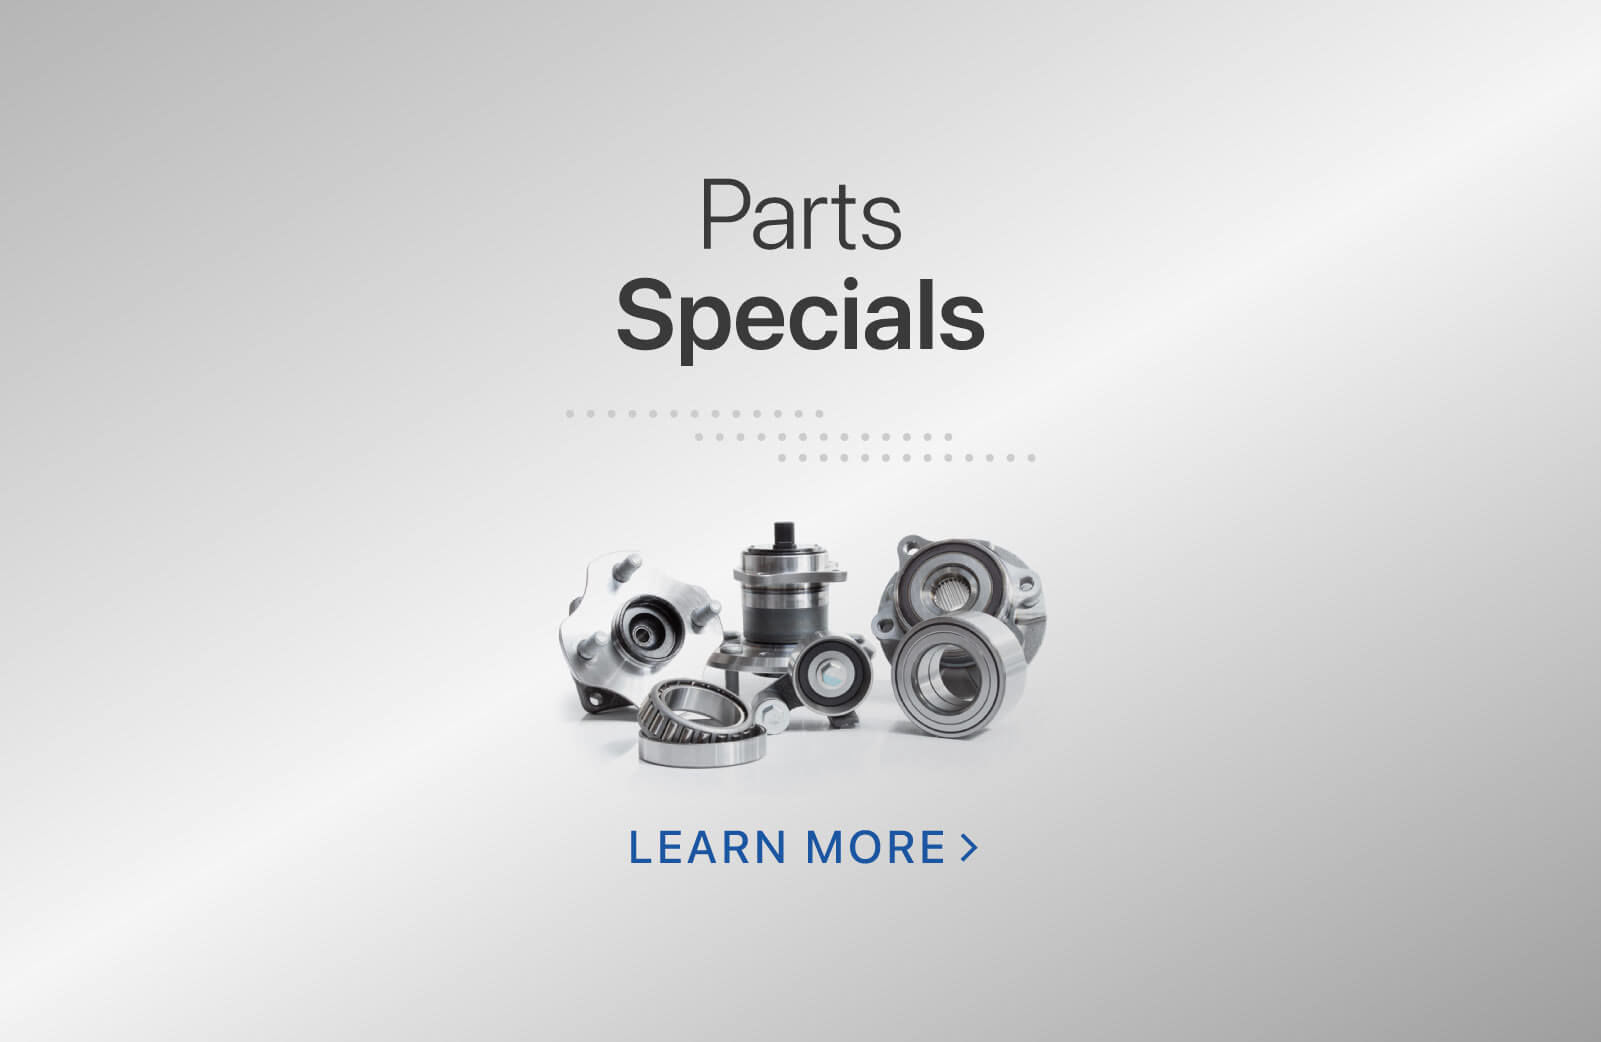 Parts Specials